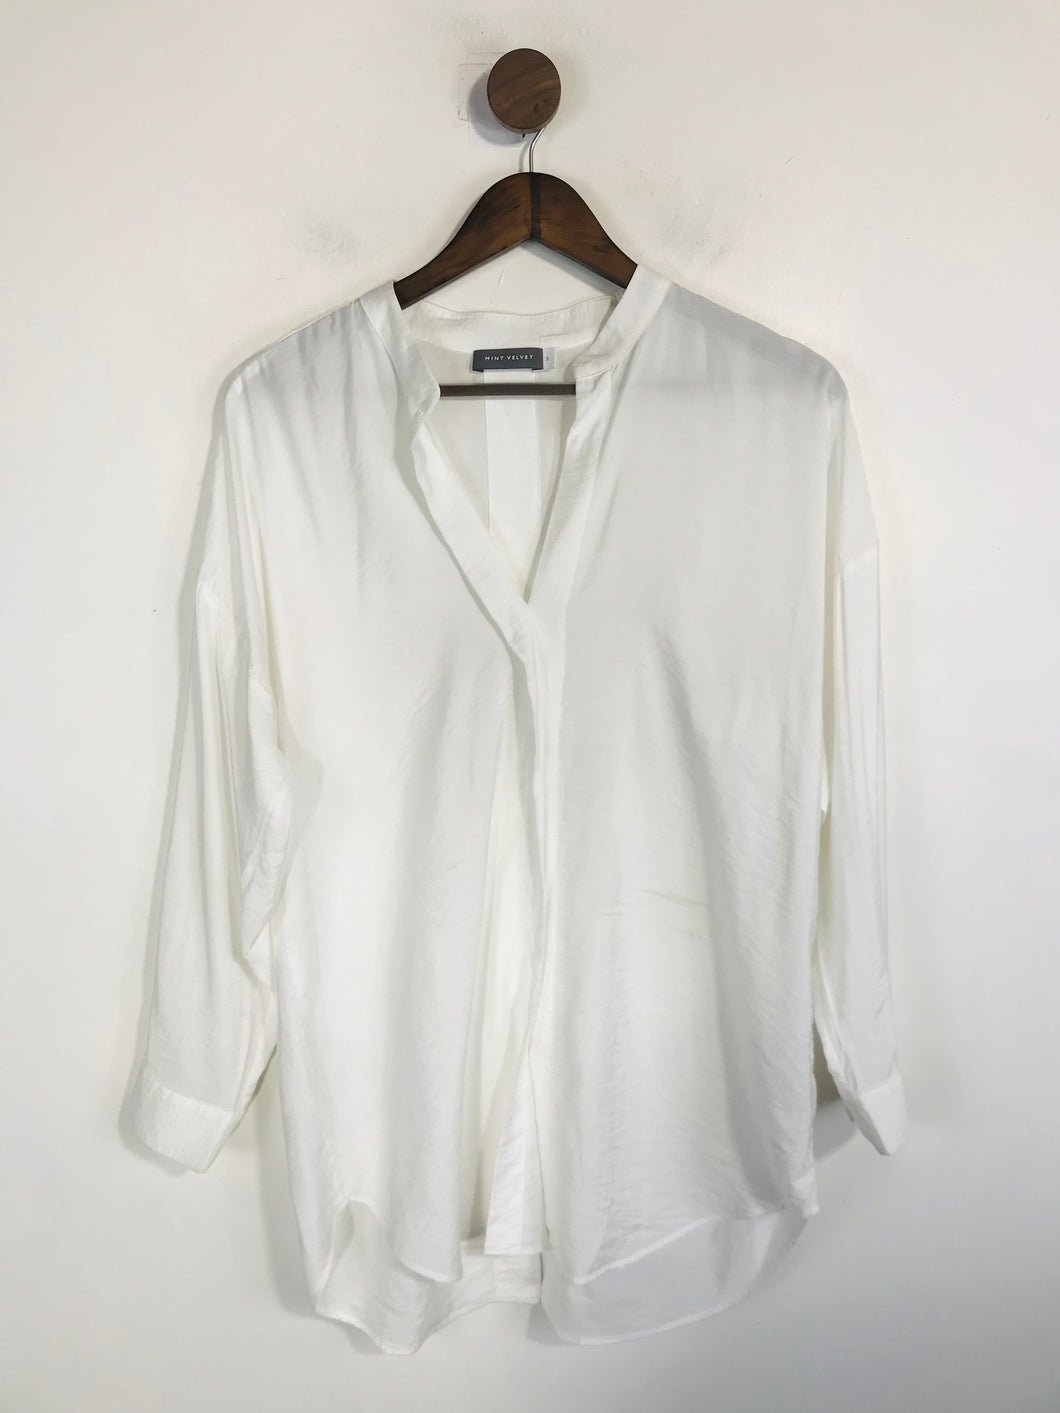 Mint Velvet Women's Long Sleeve Blouse | S UK8 | White